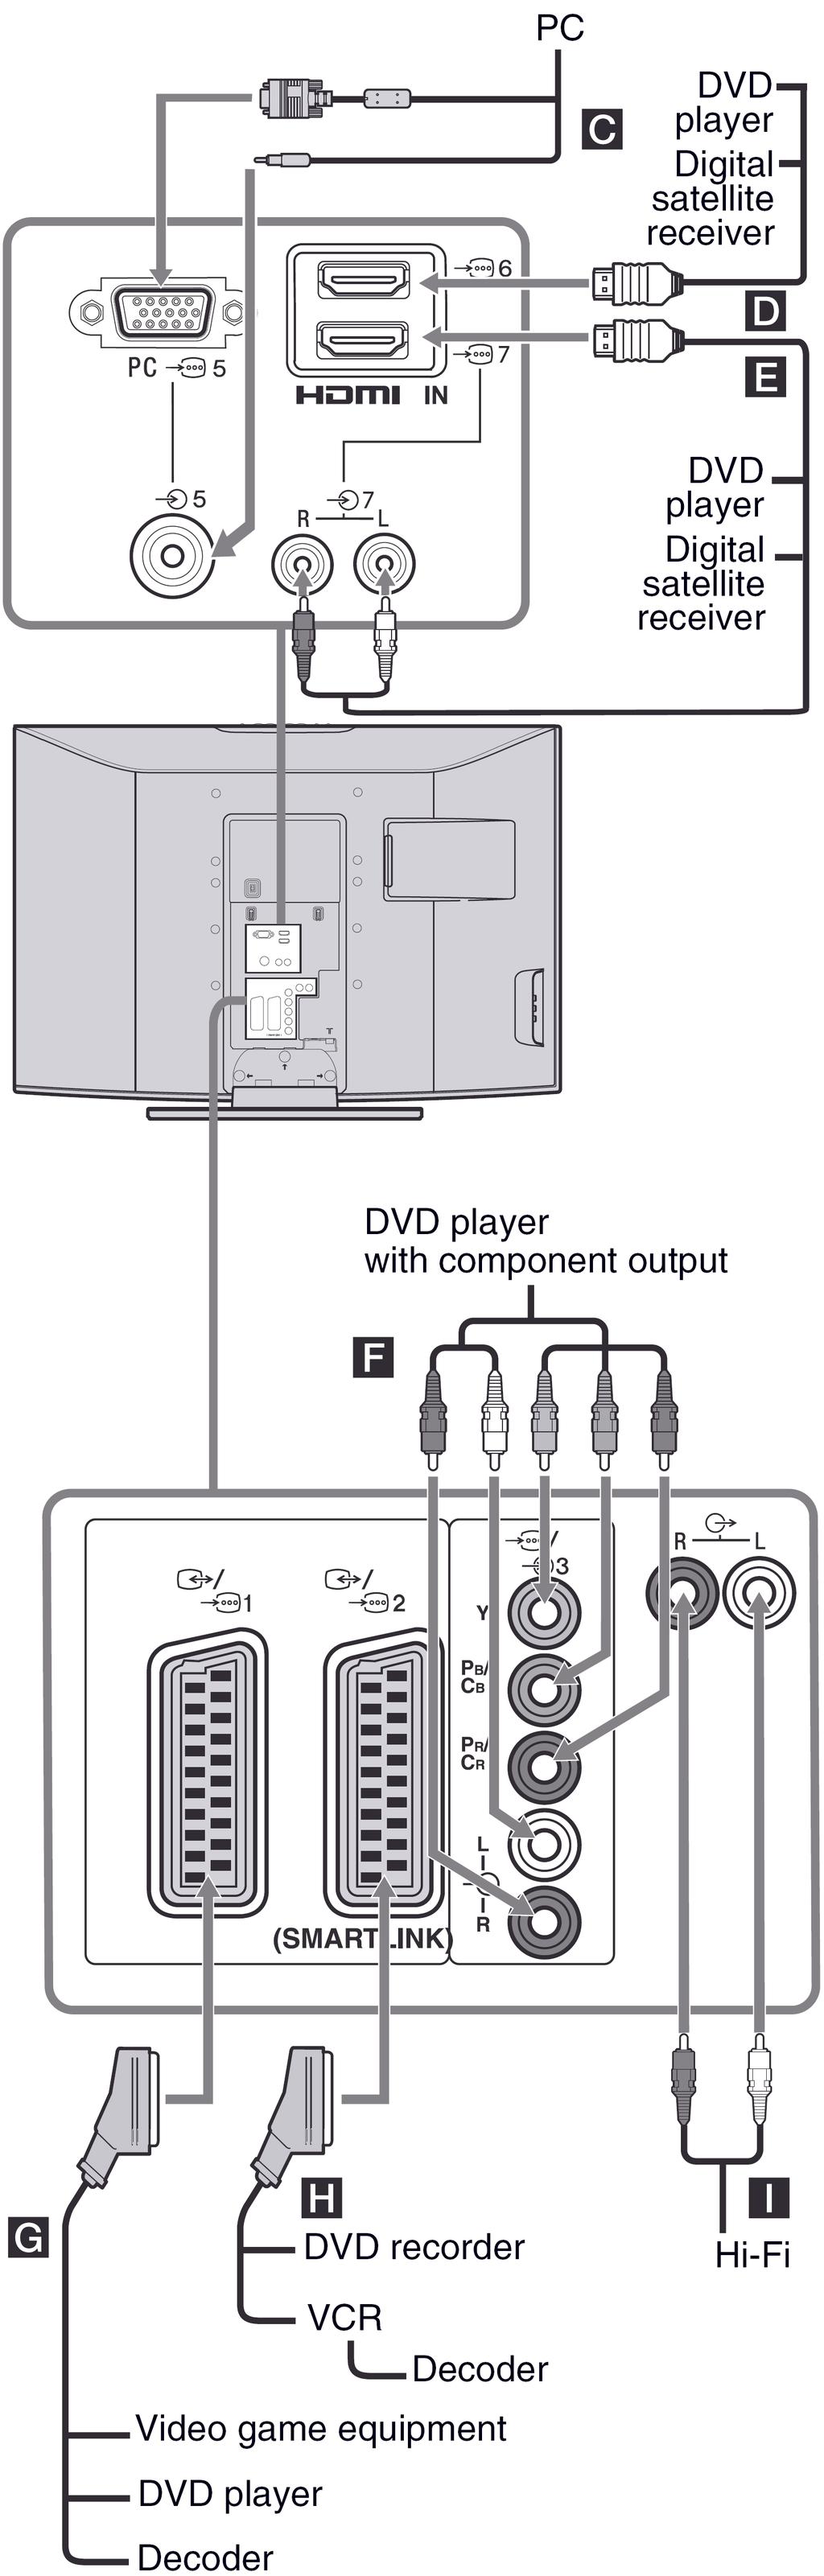 Spajanje na stražnju stranu TV prijemnika Računalo DVD Digitalni satelitski prijemnik DVD uređaj Digitalni satelitski prijemnik DVD uređaj s komponentnim izlazom Za spajanje Računala C Digitalnog